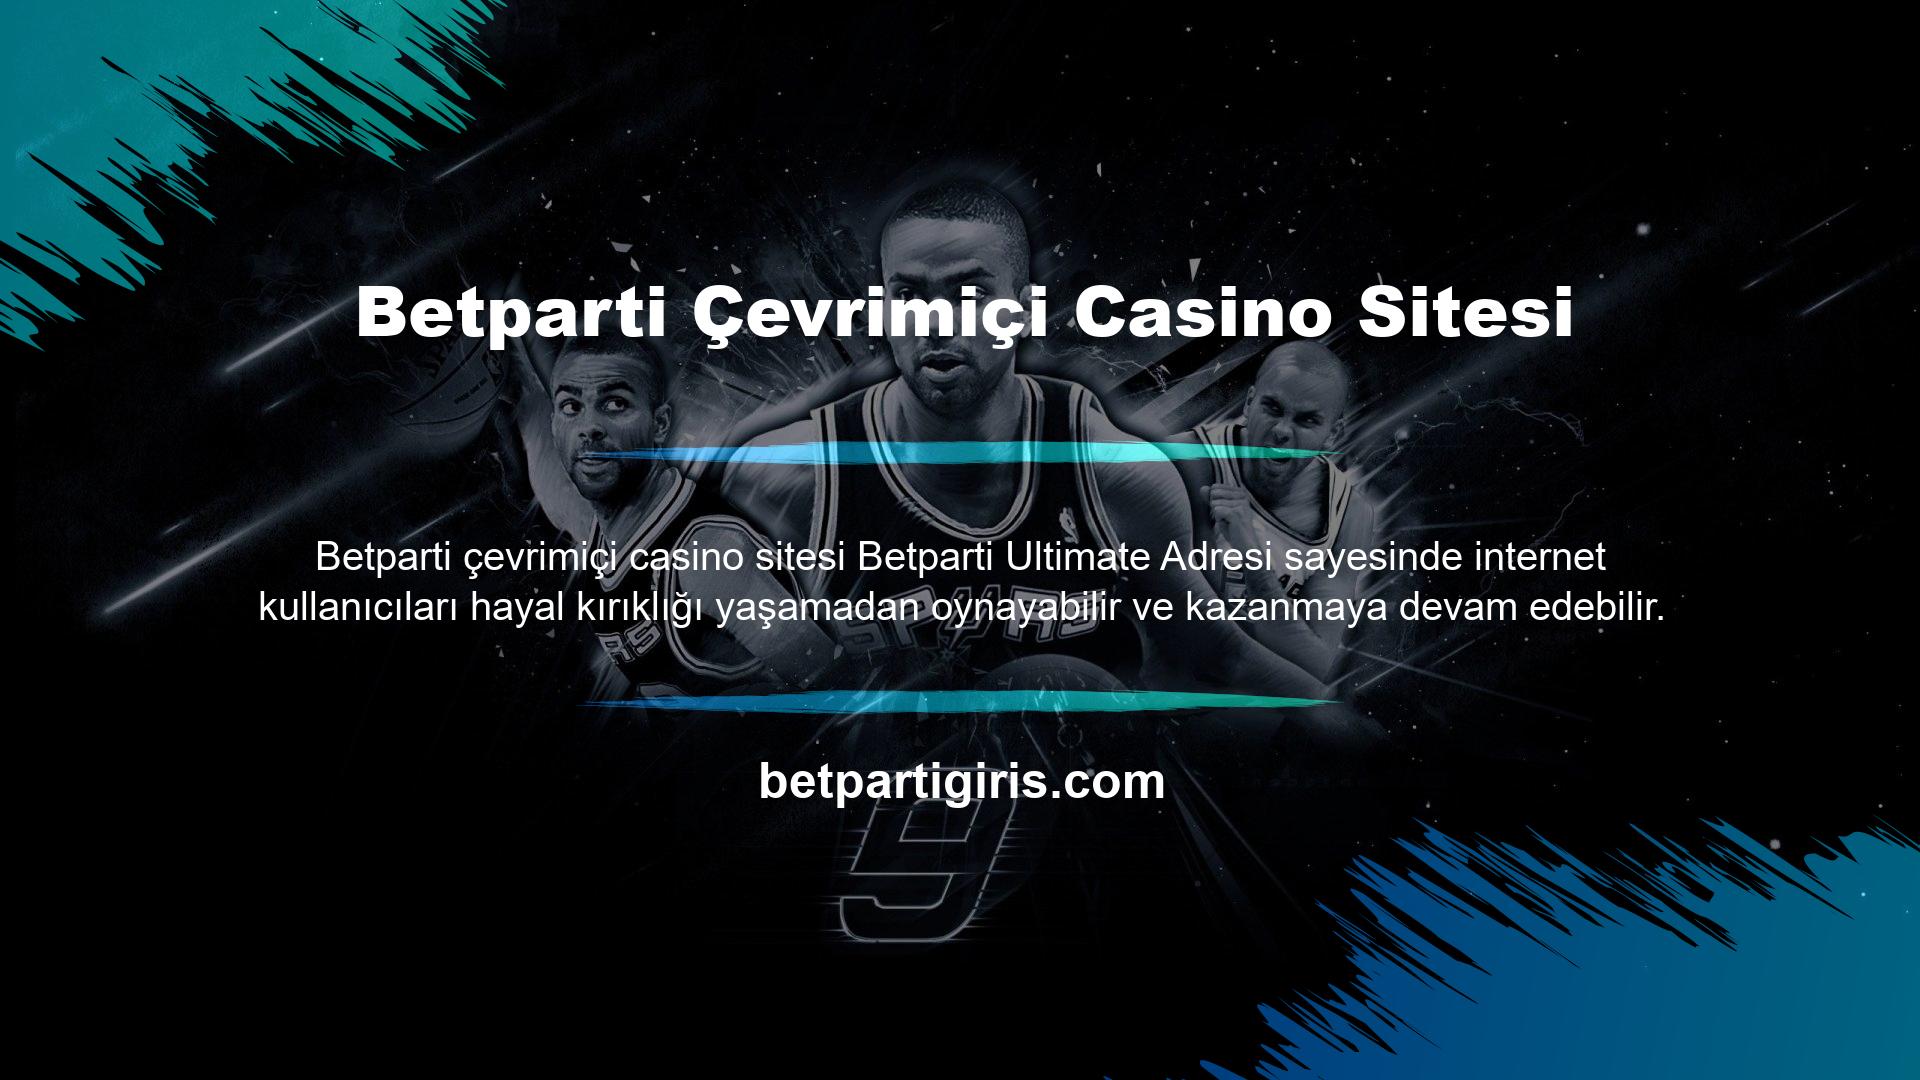 Web sitesinin mevcut kullanıcıları, bahis yapmaya ve kazanmaya devam etmek için mevcut Betparti çevrimiçi casino web sitesi adreslerini kullanarak Betparti kayıt işlemini tamamlayabilirler